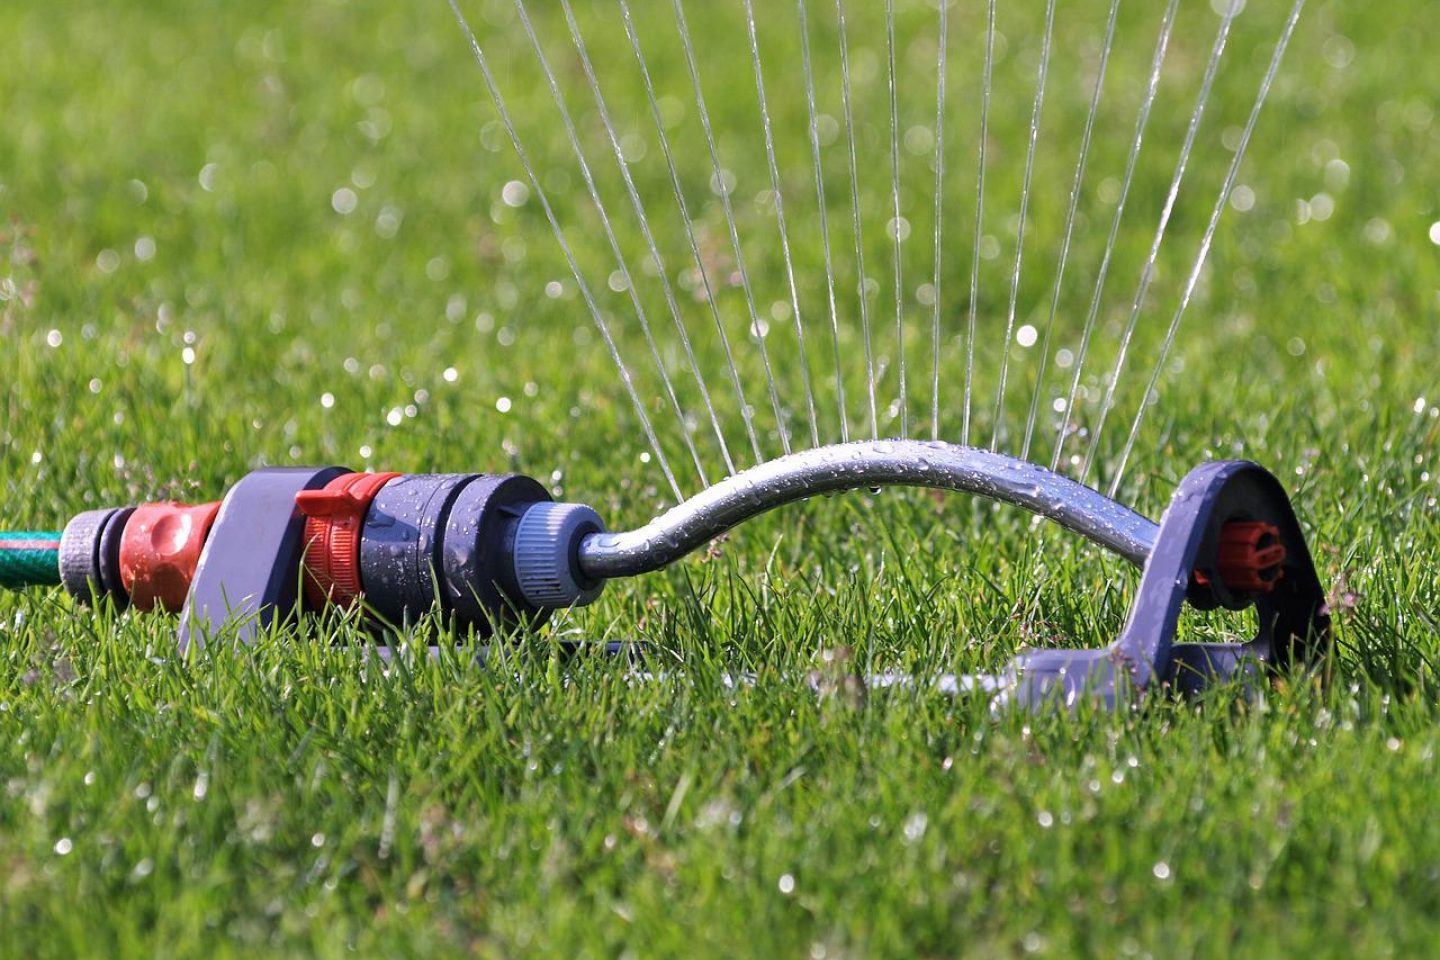 A lawn sprinkler delivering a jet of water